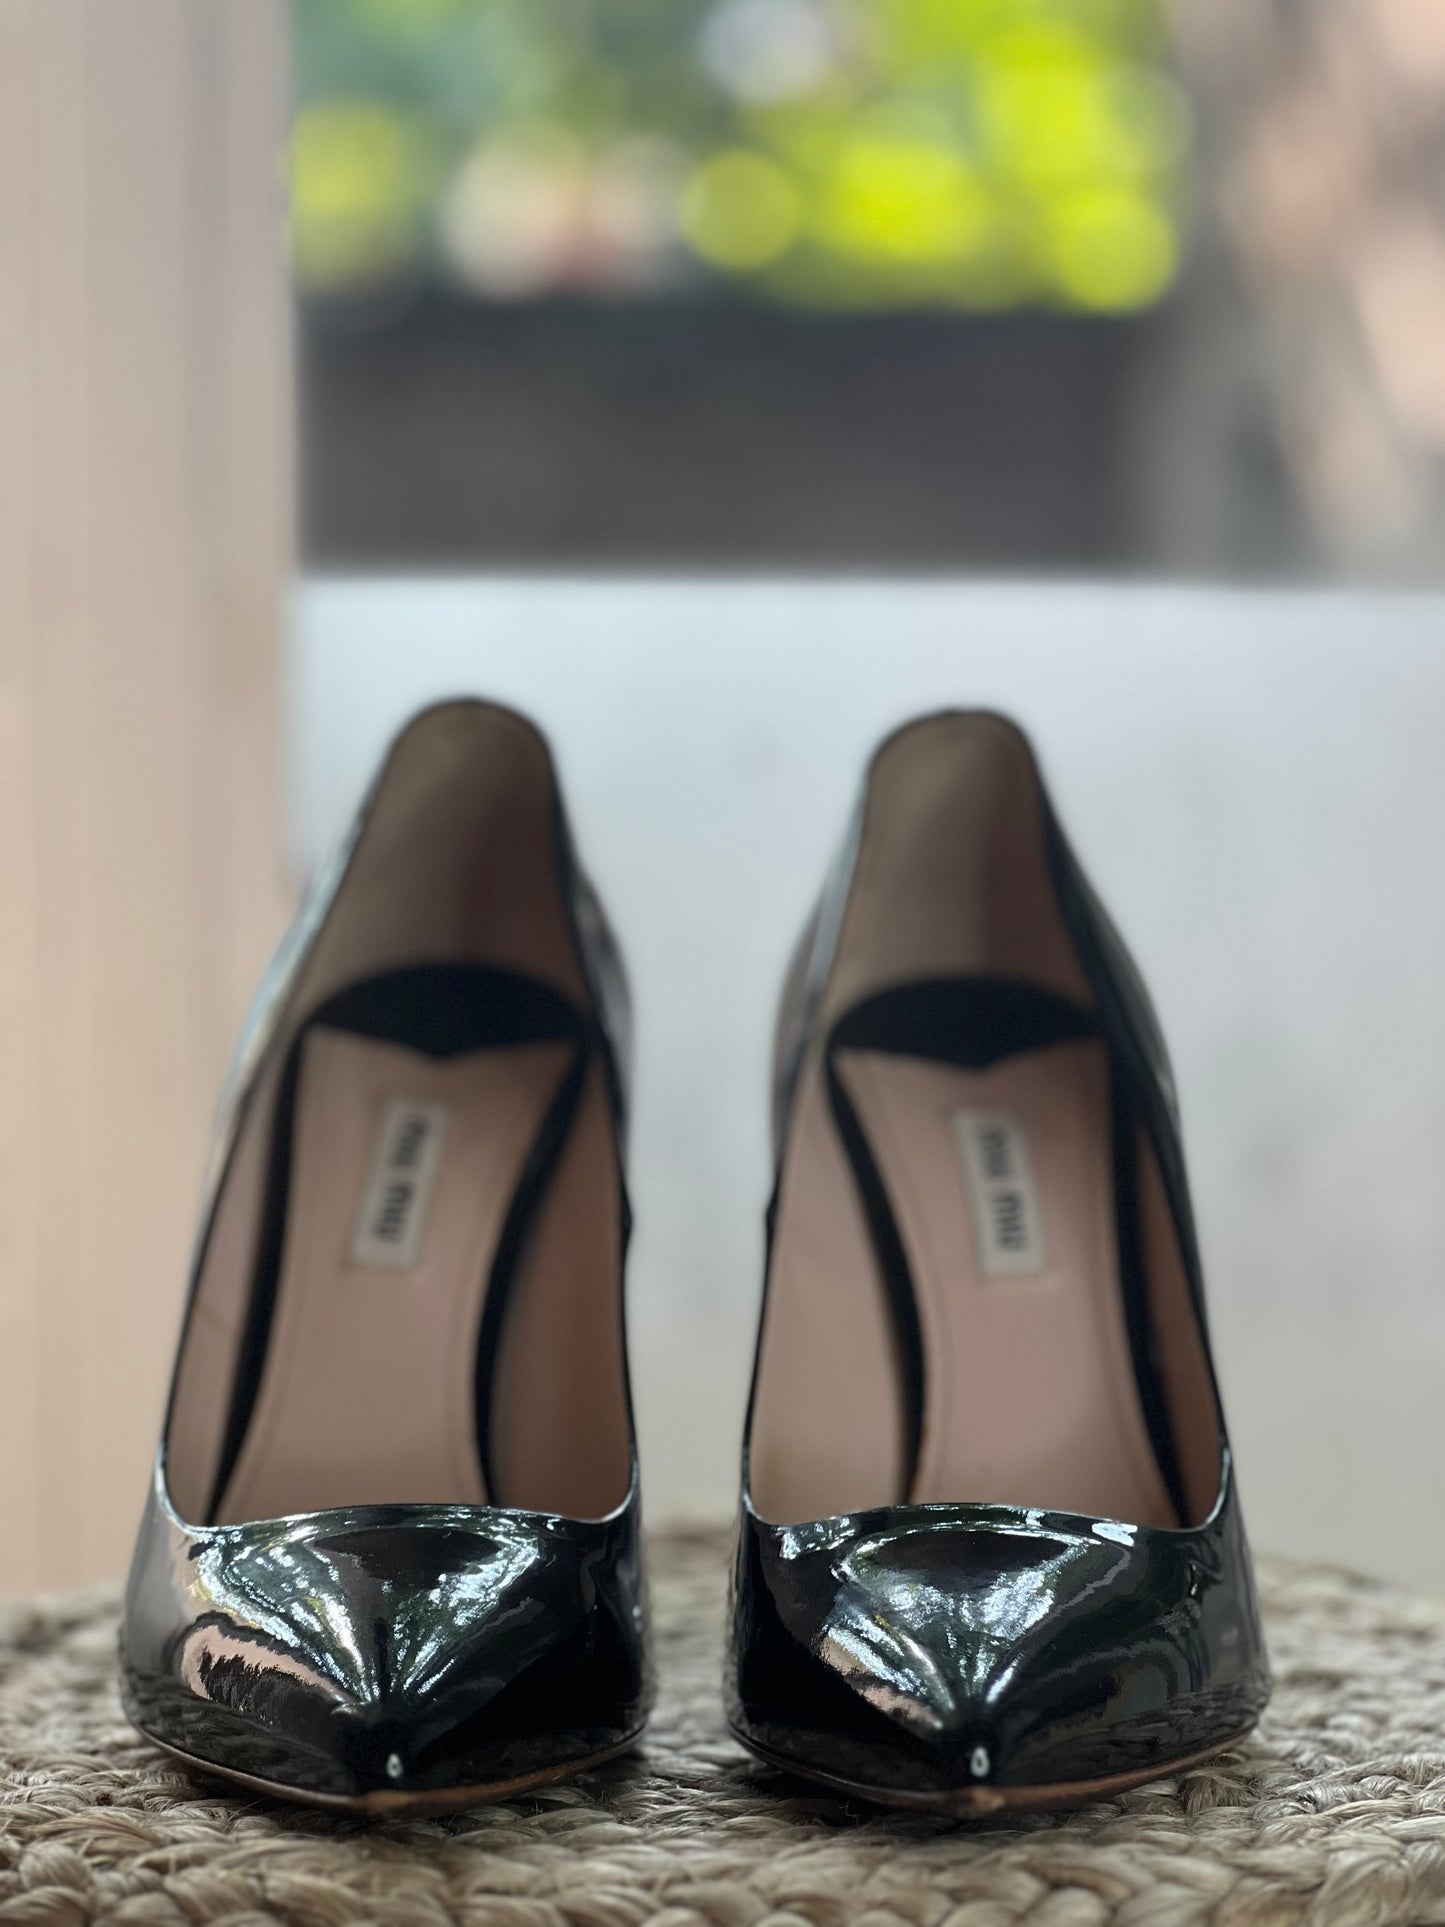 Miu Miu Black Patent Glitter Sole Shoes Size 8